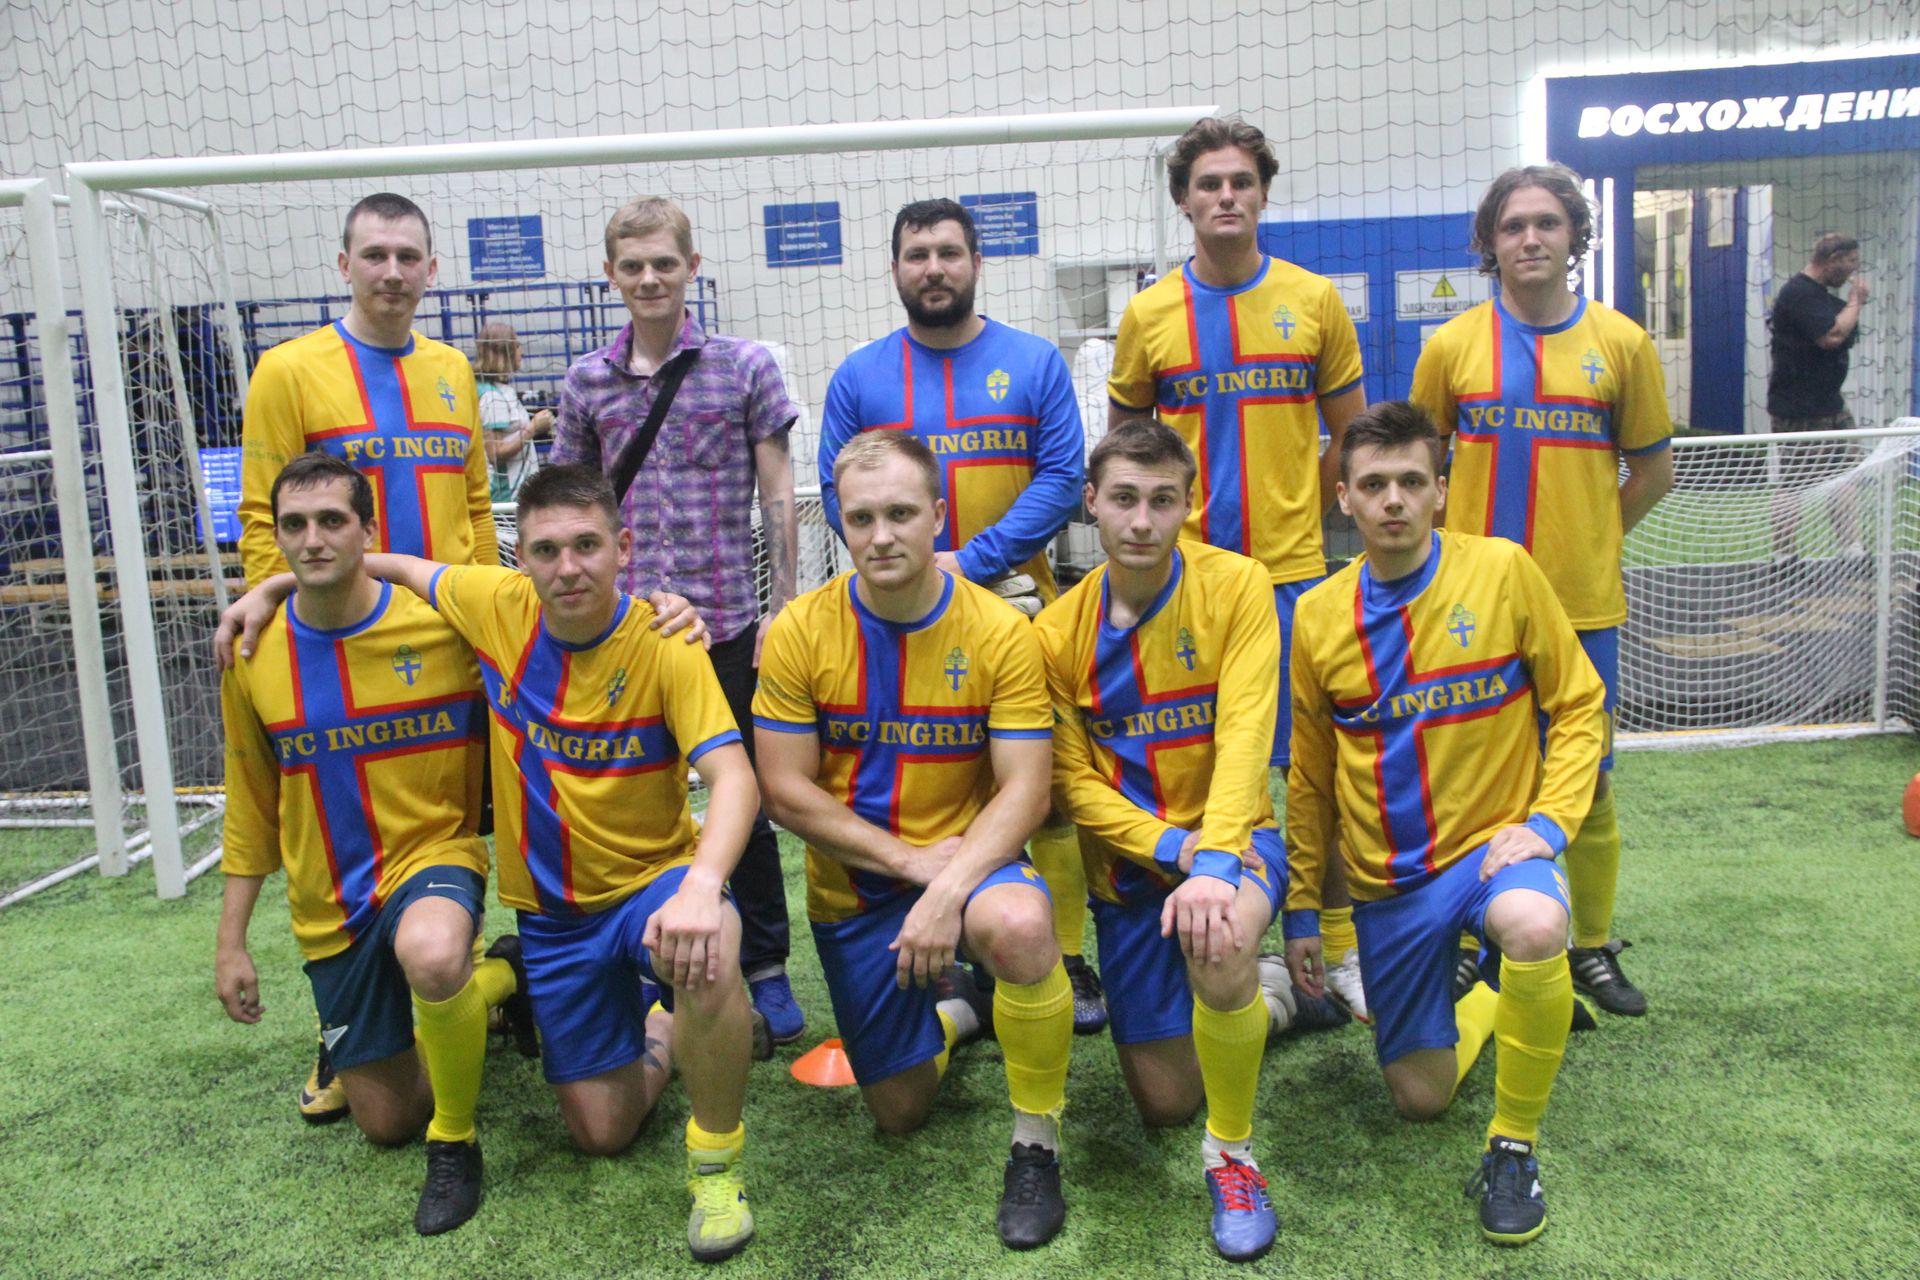 Футбольная команда при поддержке НЕВСКИХ НОВОСТЕЙ выиграла приз на «Кубке Росглавспорт»